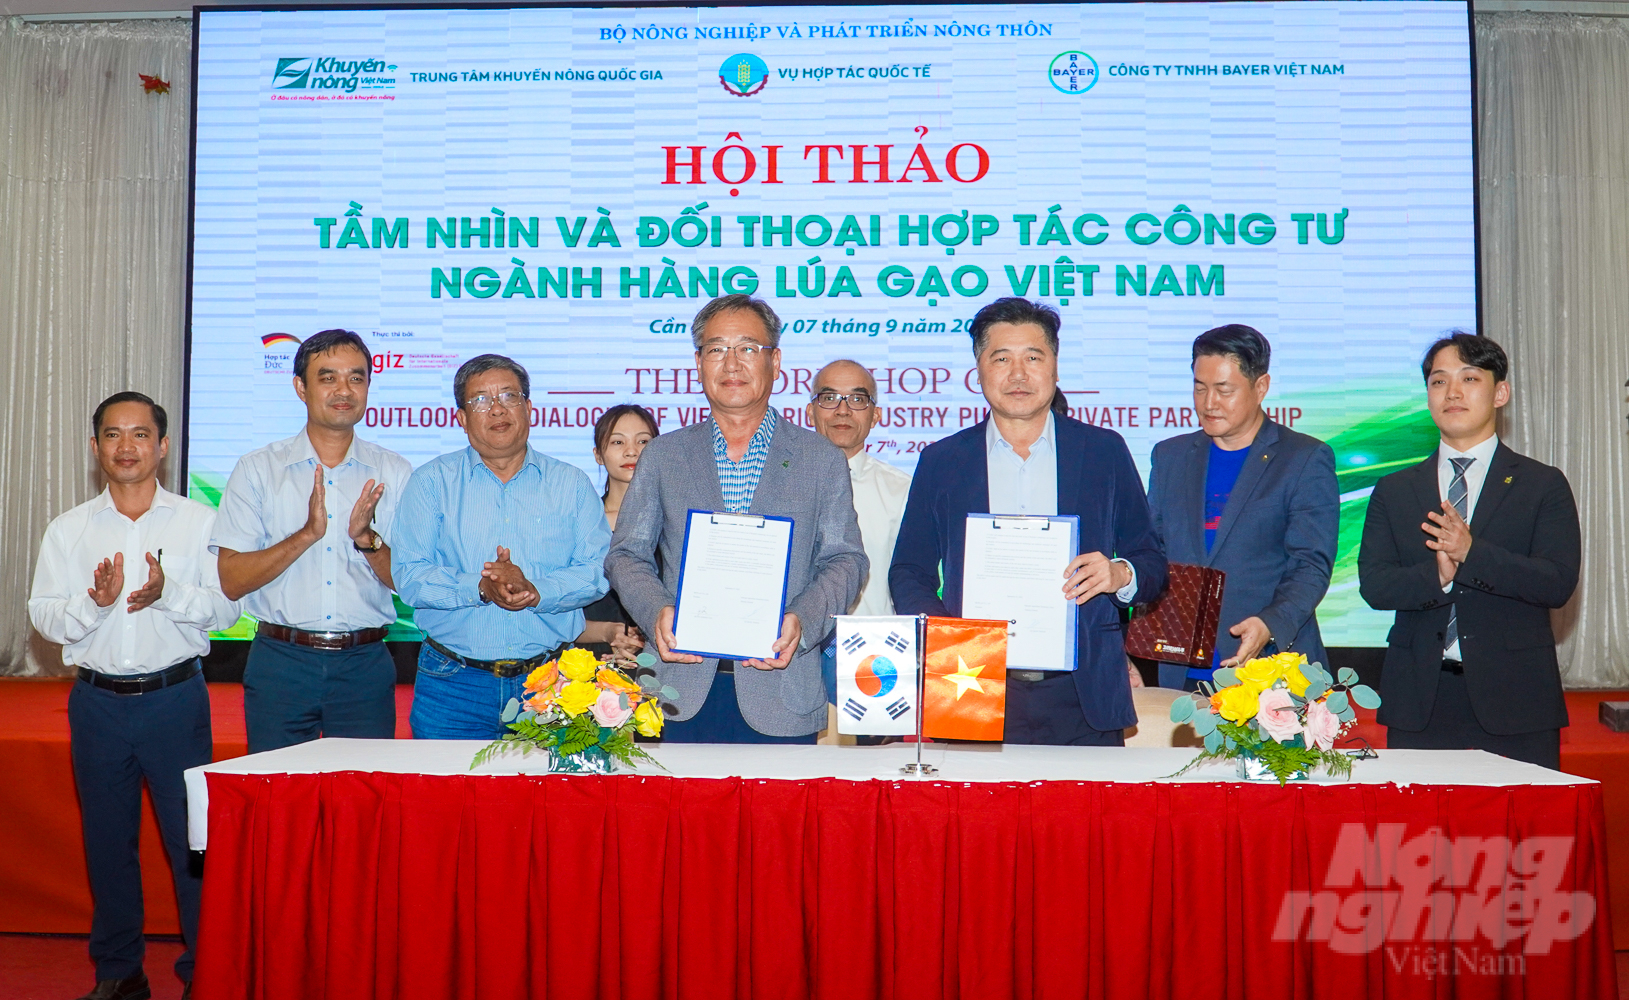 Tại hội thảo, Trung tâm Khuyến nông Quốc gia và Công ty BioPlant (Hàn Quốc) đã ký kết hợp tác. Ảnh: Kim Anh.